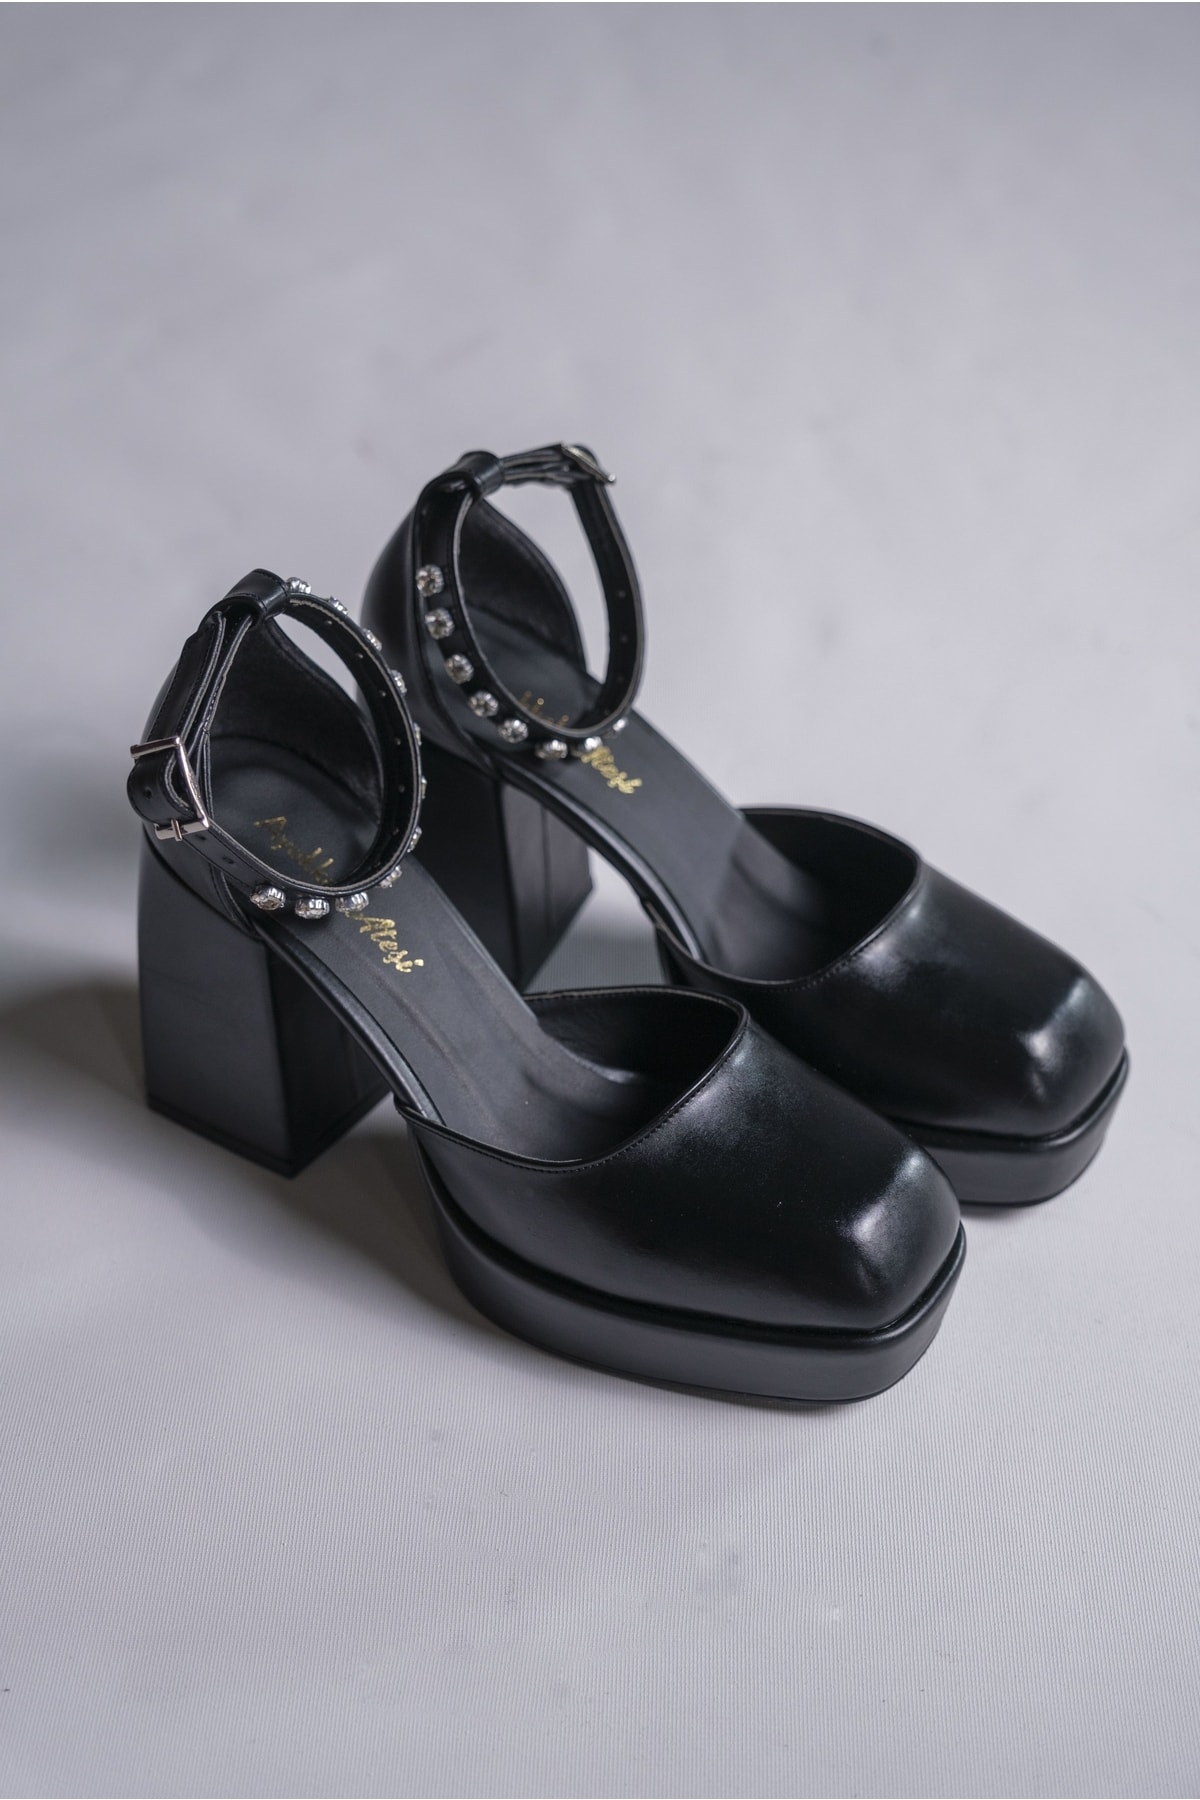 Ayakkabı Ateşi Nikah Ve Gelinlik Ayakkabısı Siyah Cilt Tasarım Alçak Topuklu Düğün Ayakkabısı Sandy